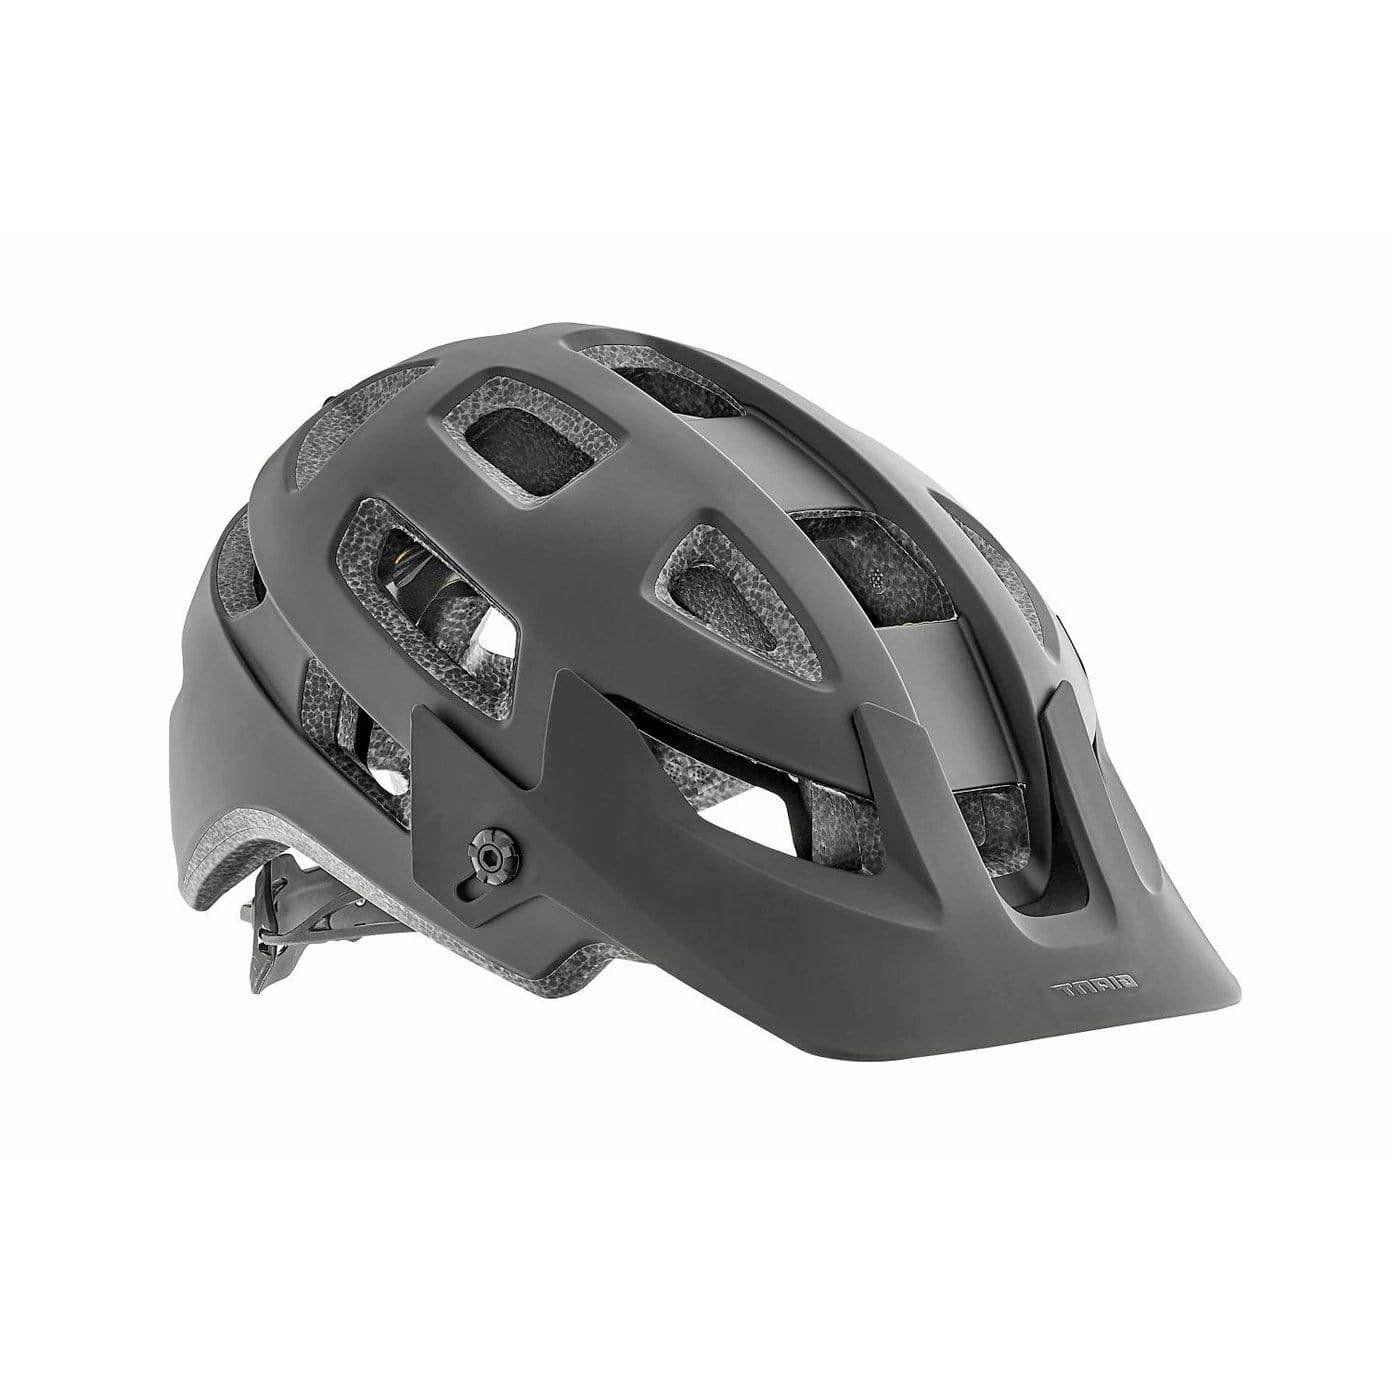 Giant Rail SX MIPS Bike Helmet - Black